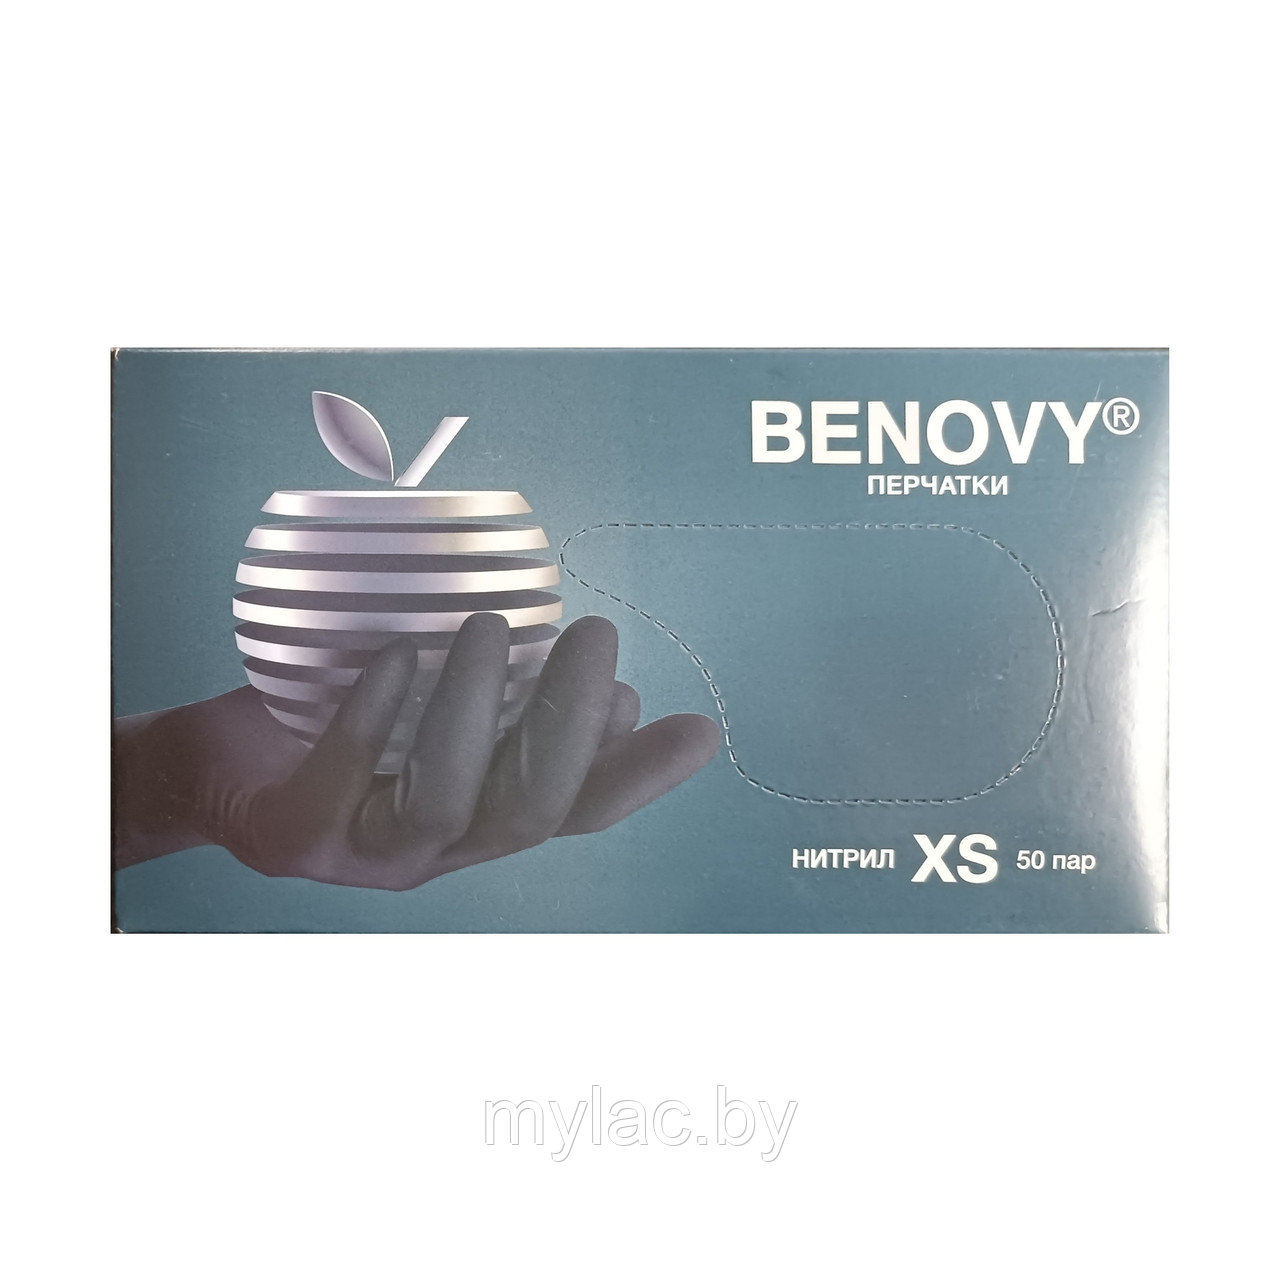 BENOVY Перчатки нитриловые черные текстурированные размер XS 50 пар (100 шт.)